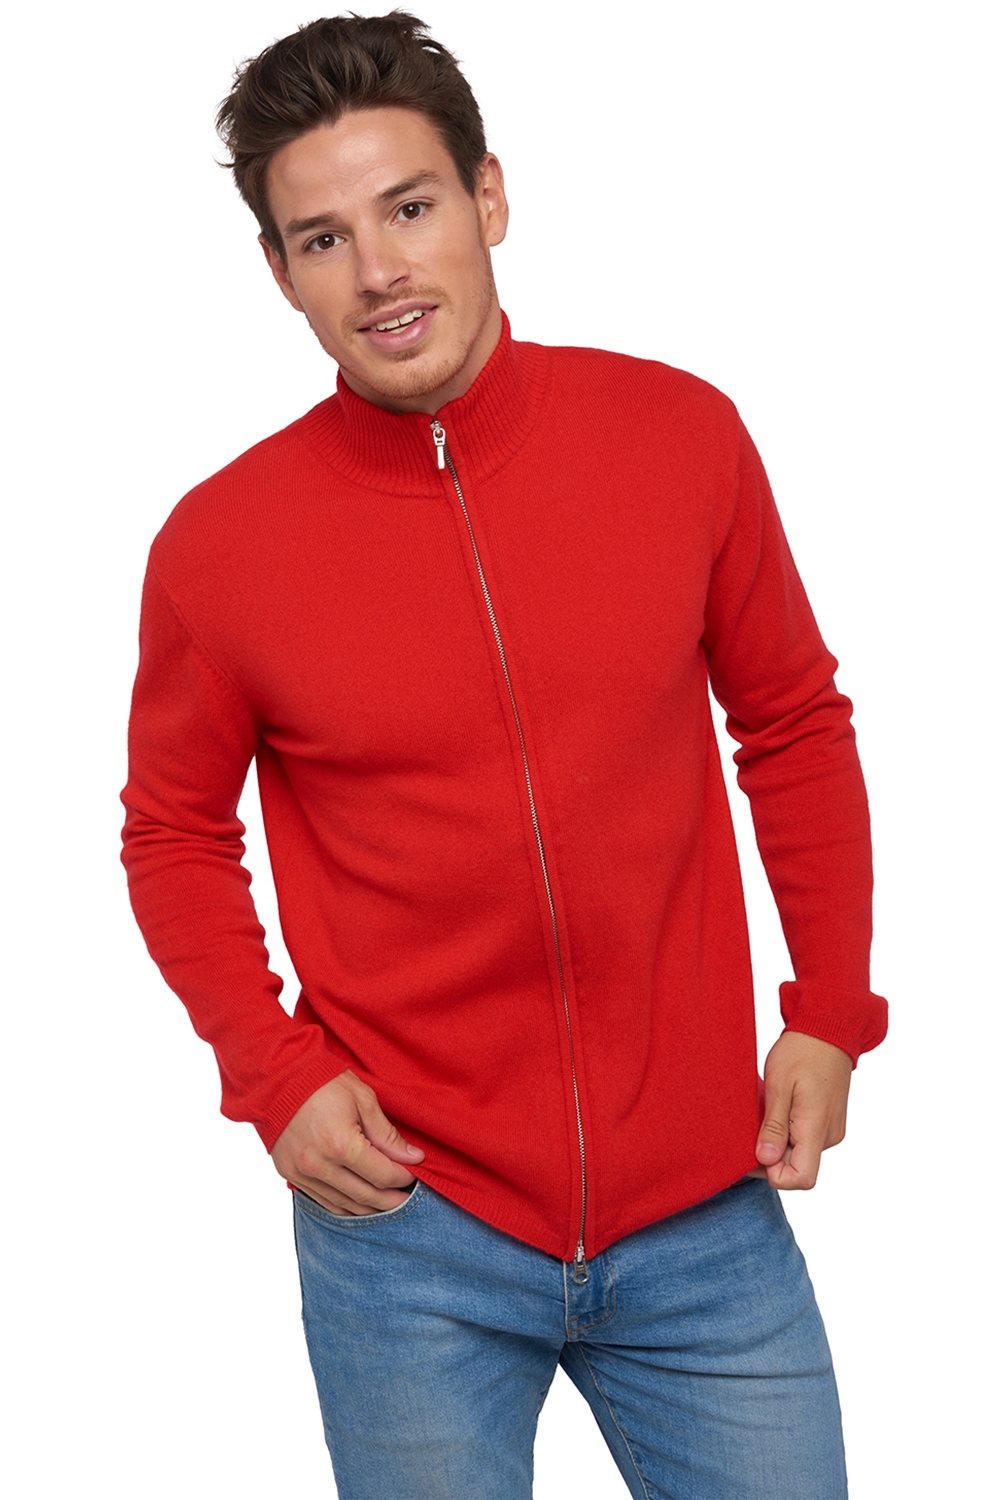 Cachemire pull homme zip capuche elton rouge 4xl